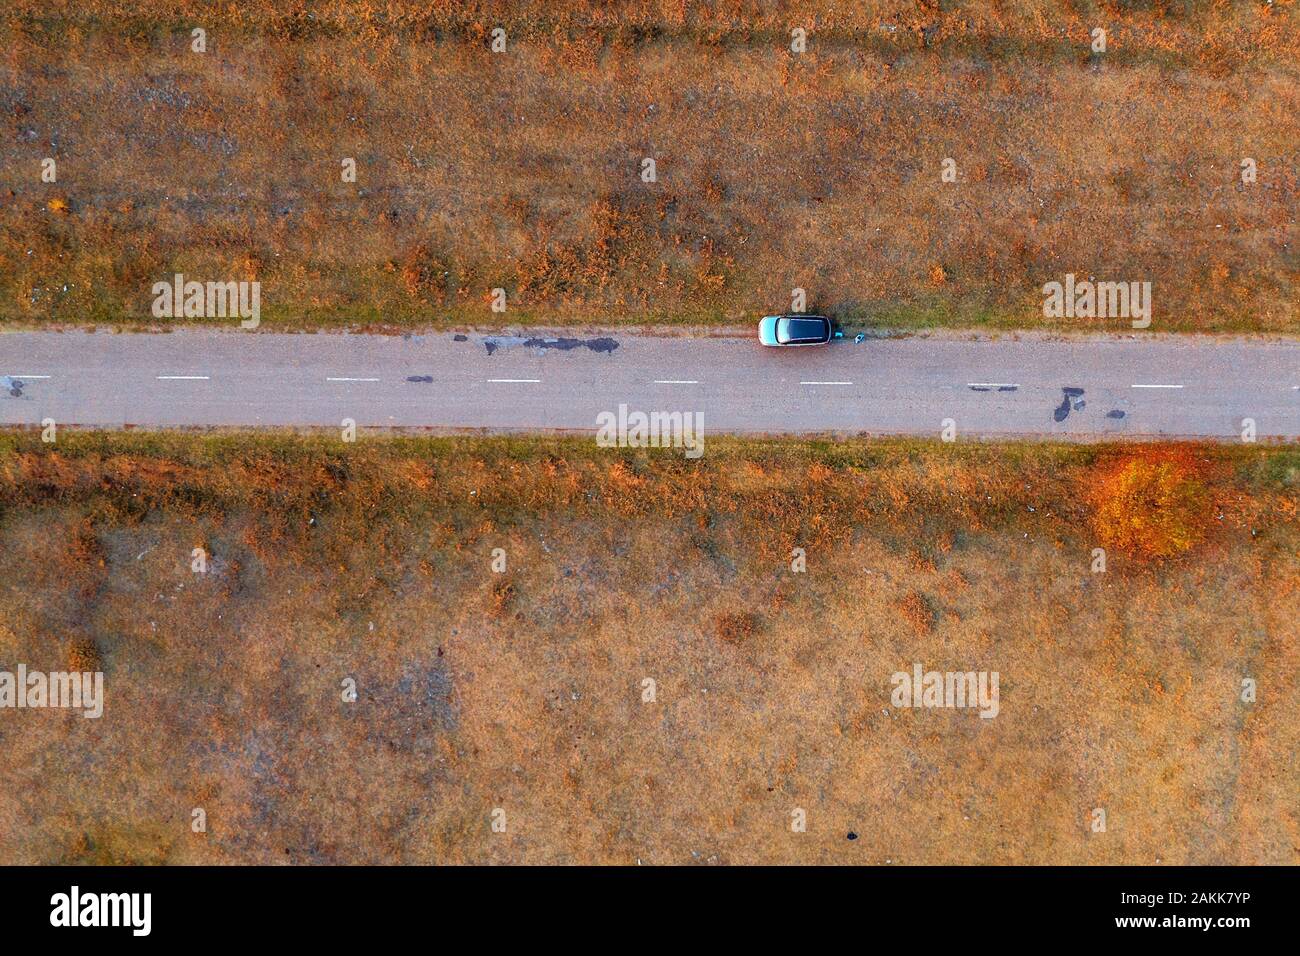 La mujer y el coche en carretera a través de grassy eriales, vista aérea directamente encima de drone POV Foto de stock